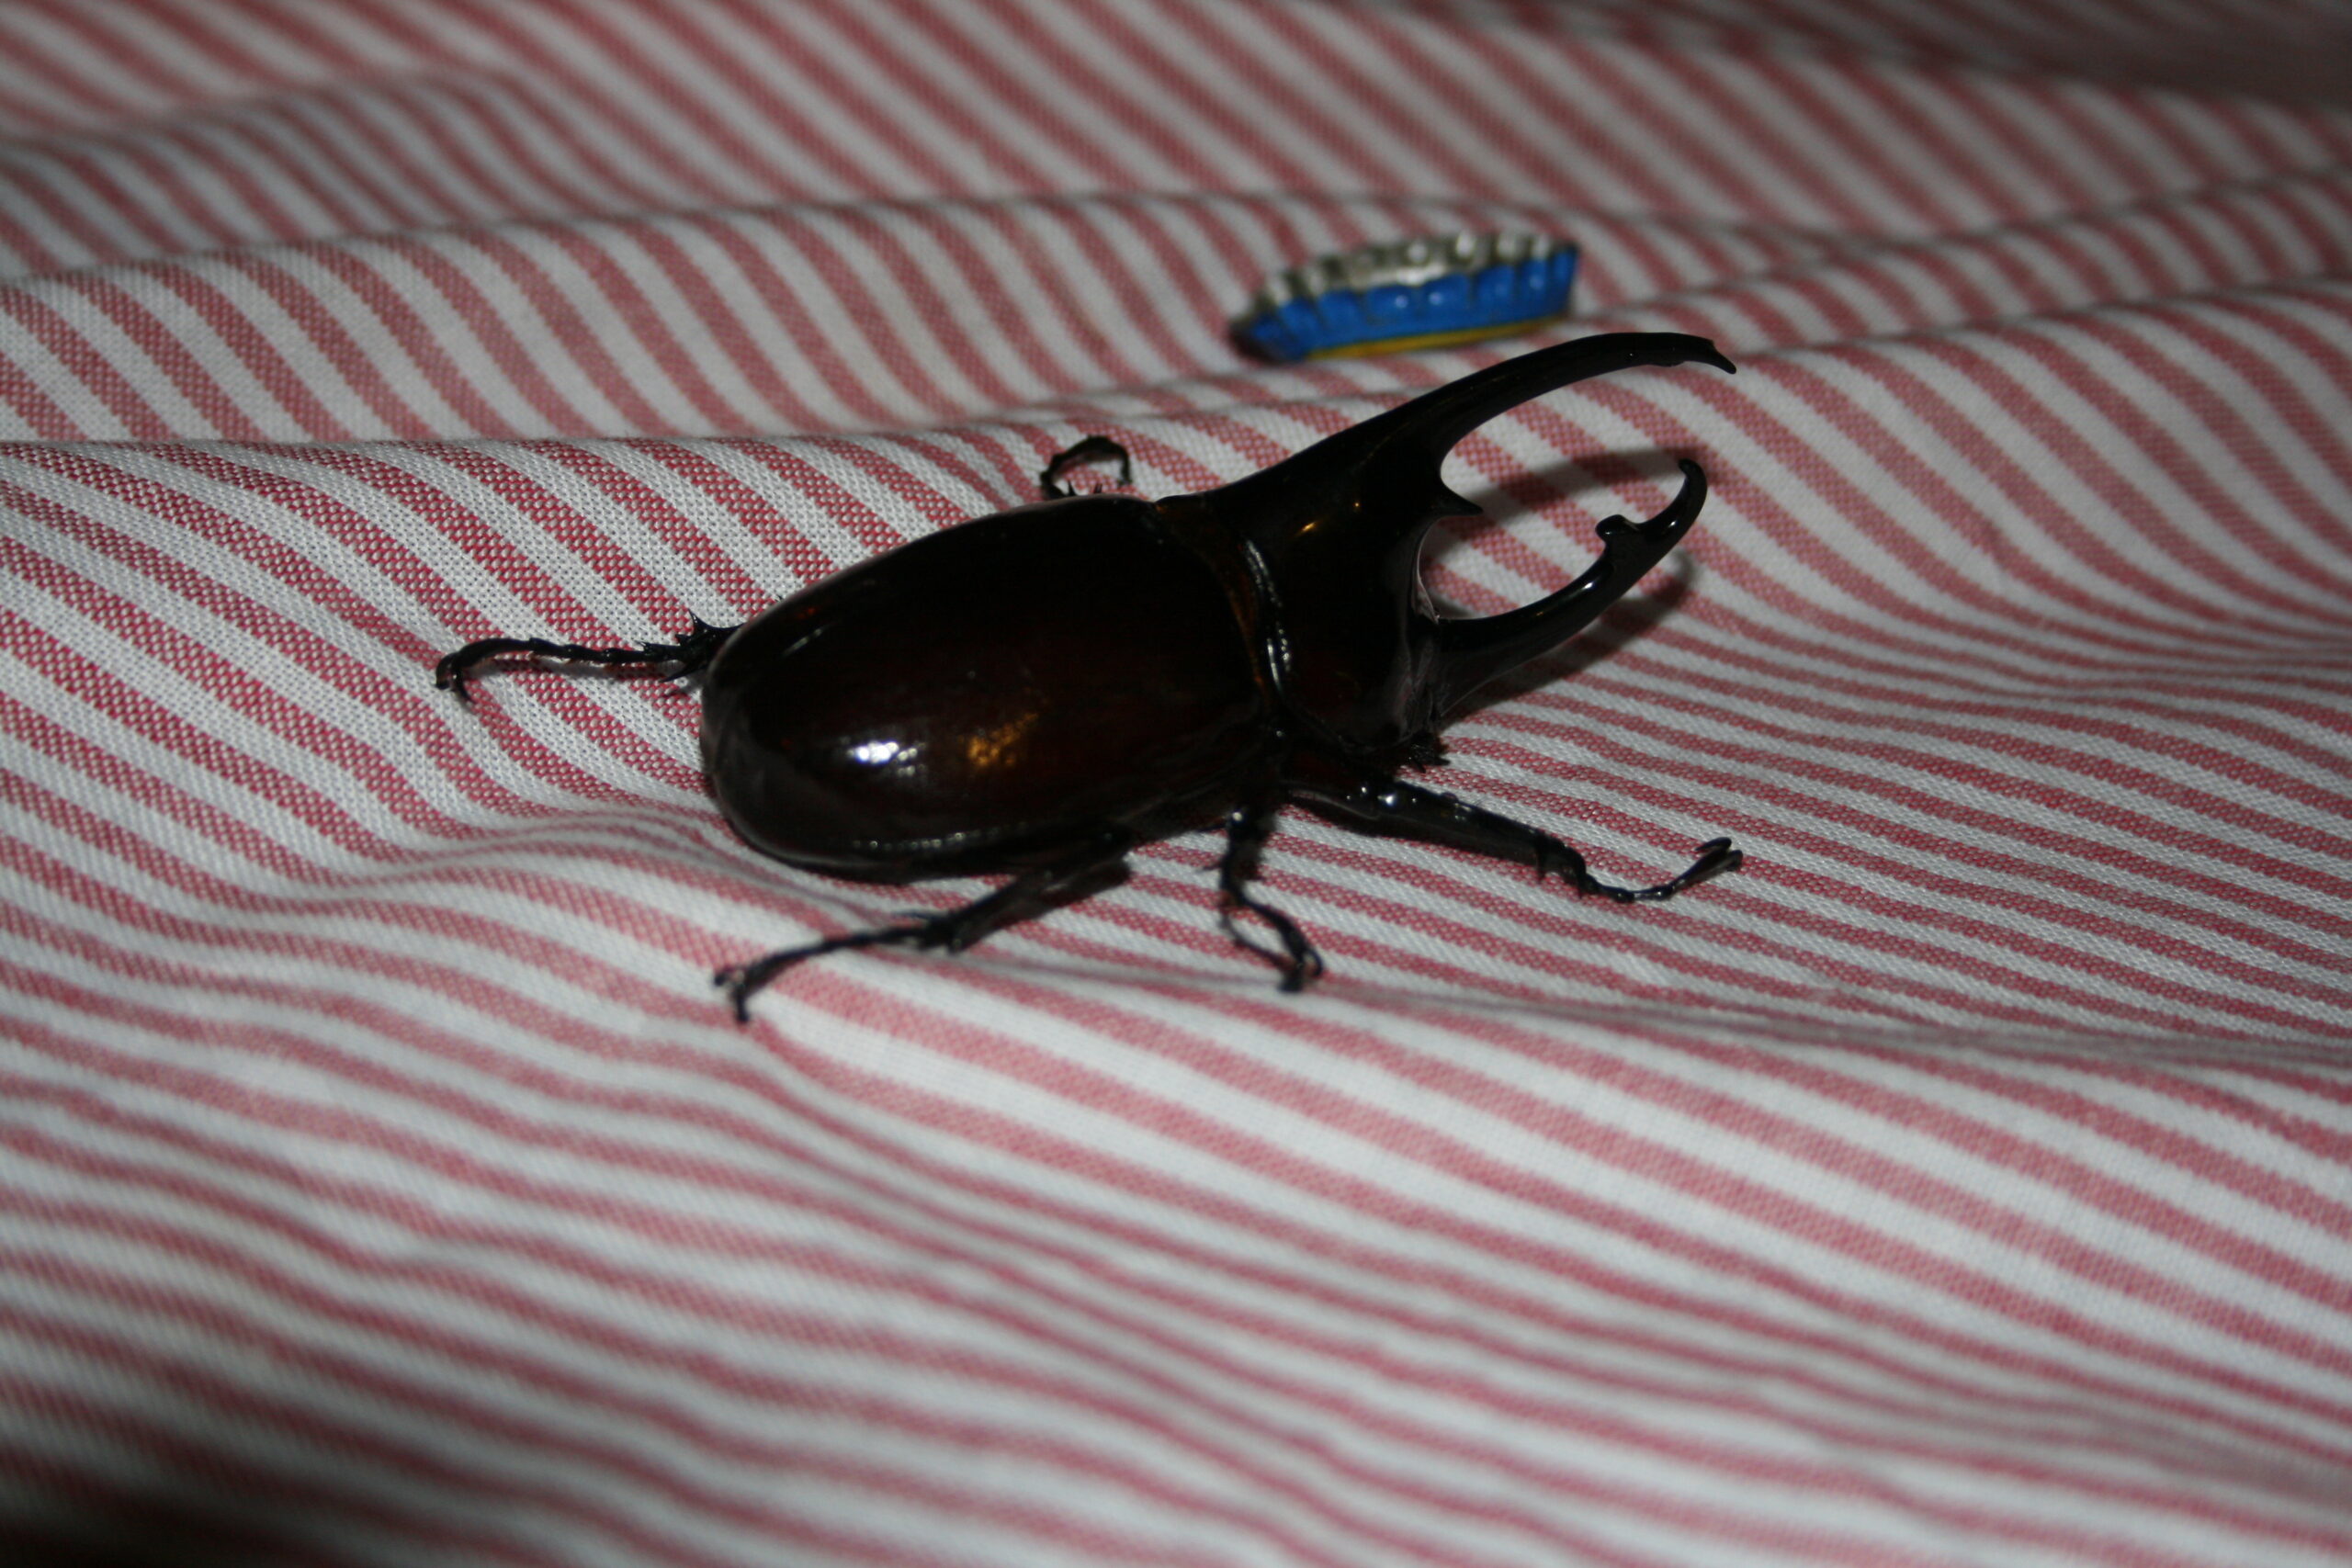 Huge cockroach